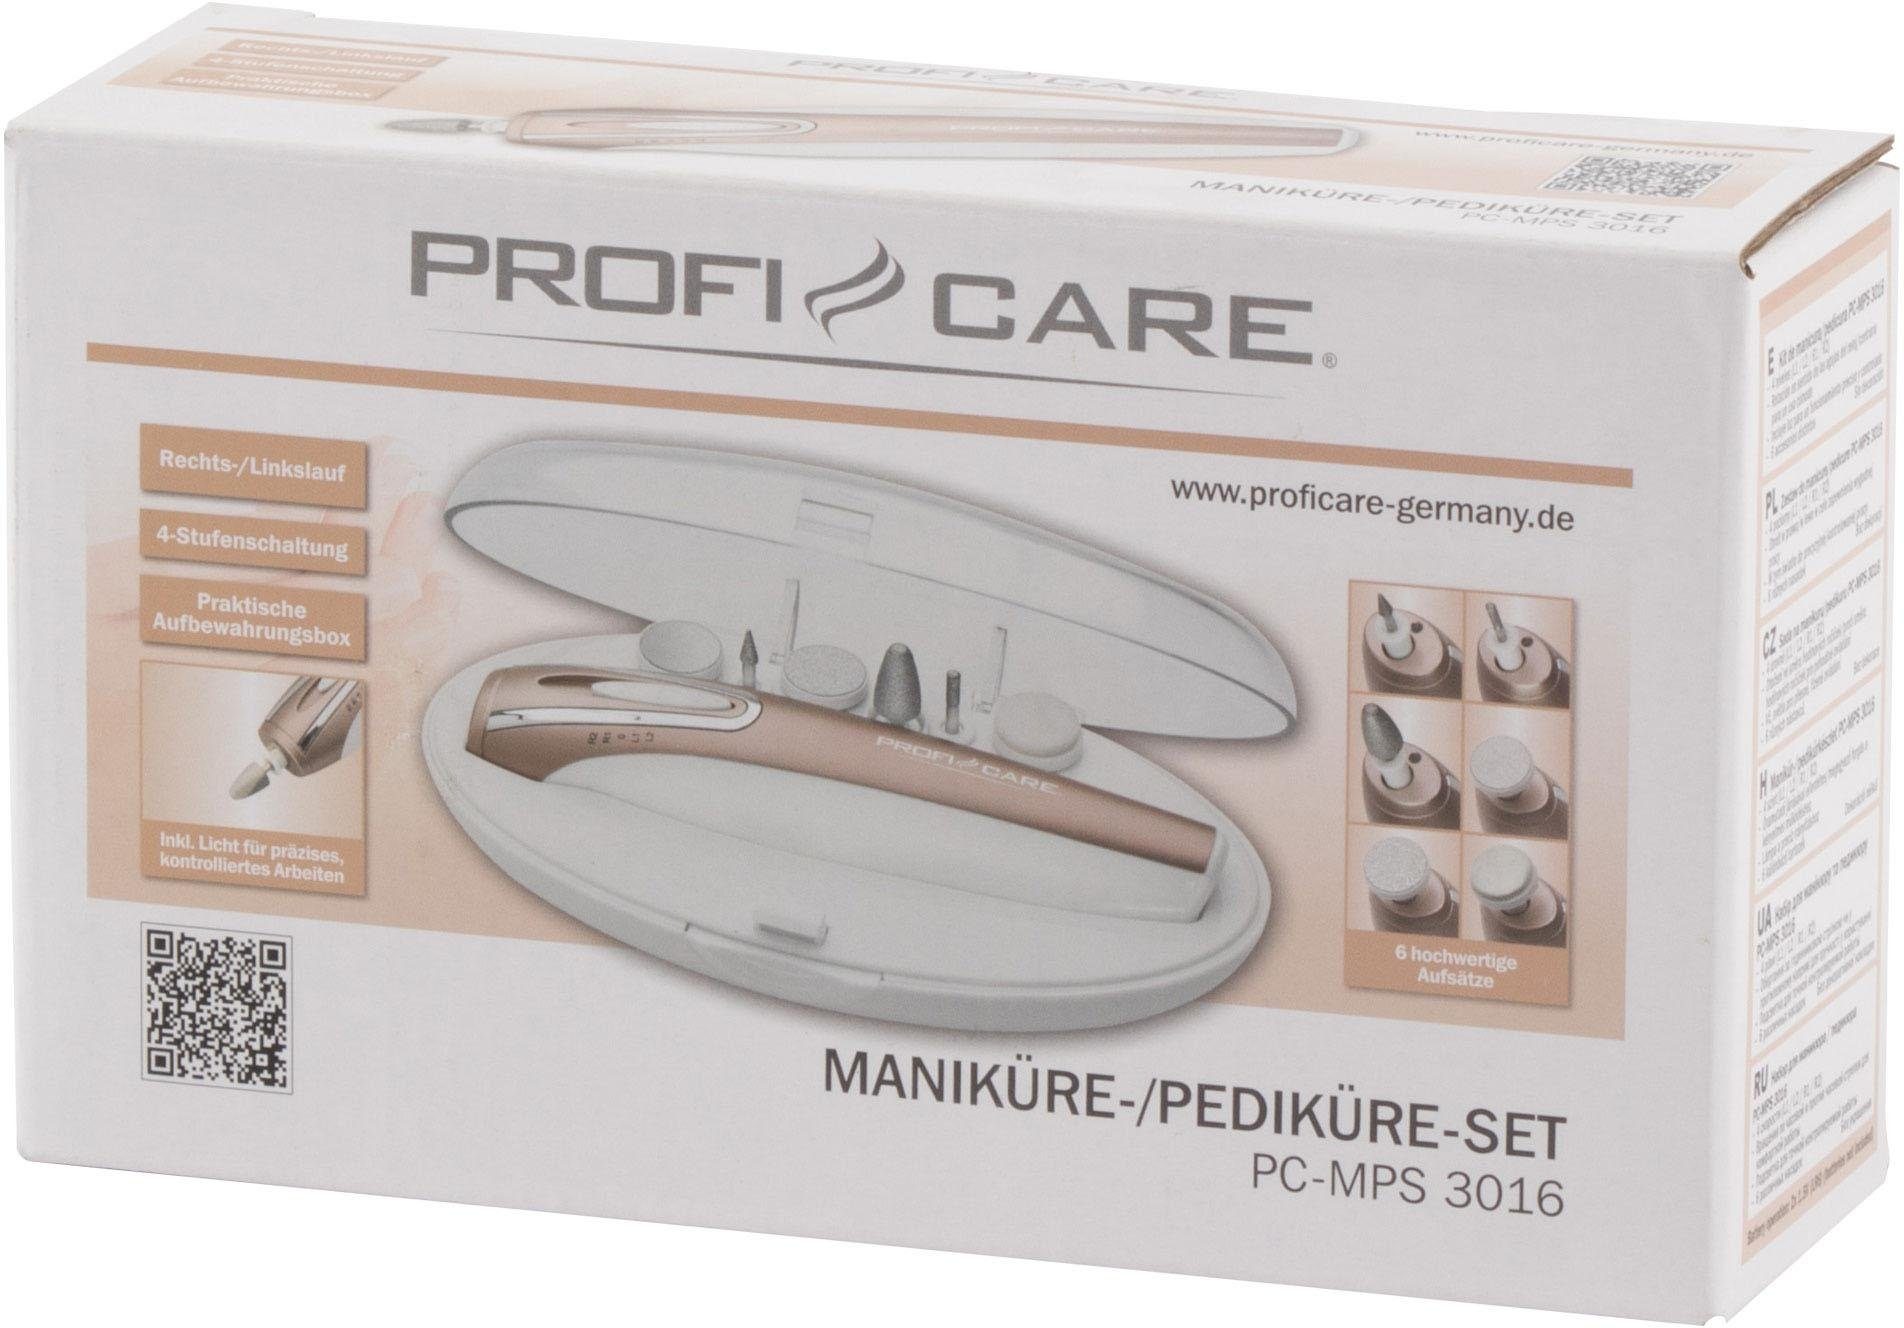 Maniküre-Pediküre-Set ProfiCare 3016 PC-MPS